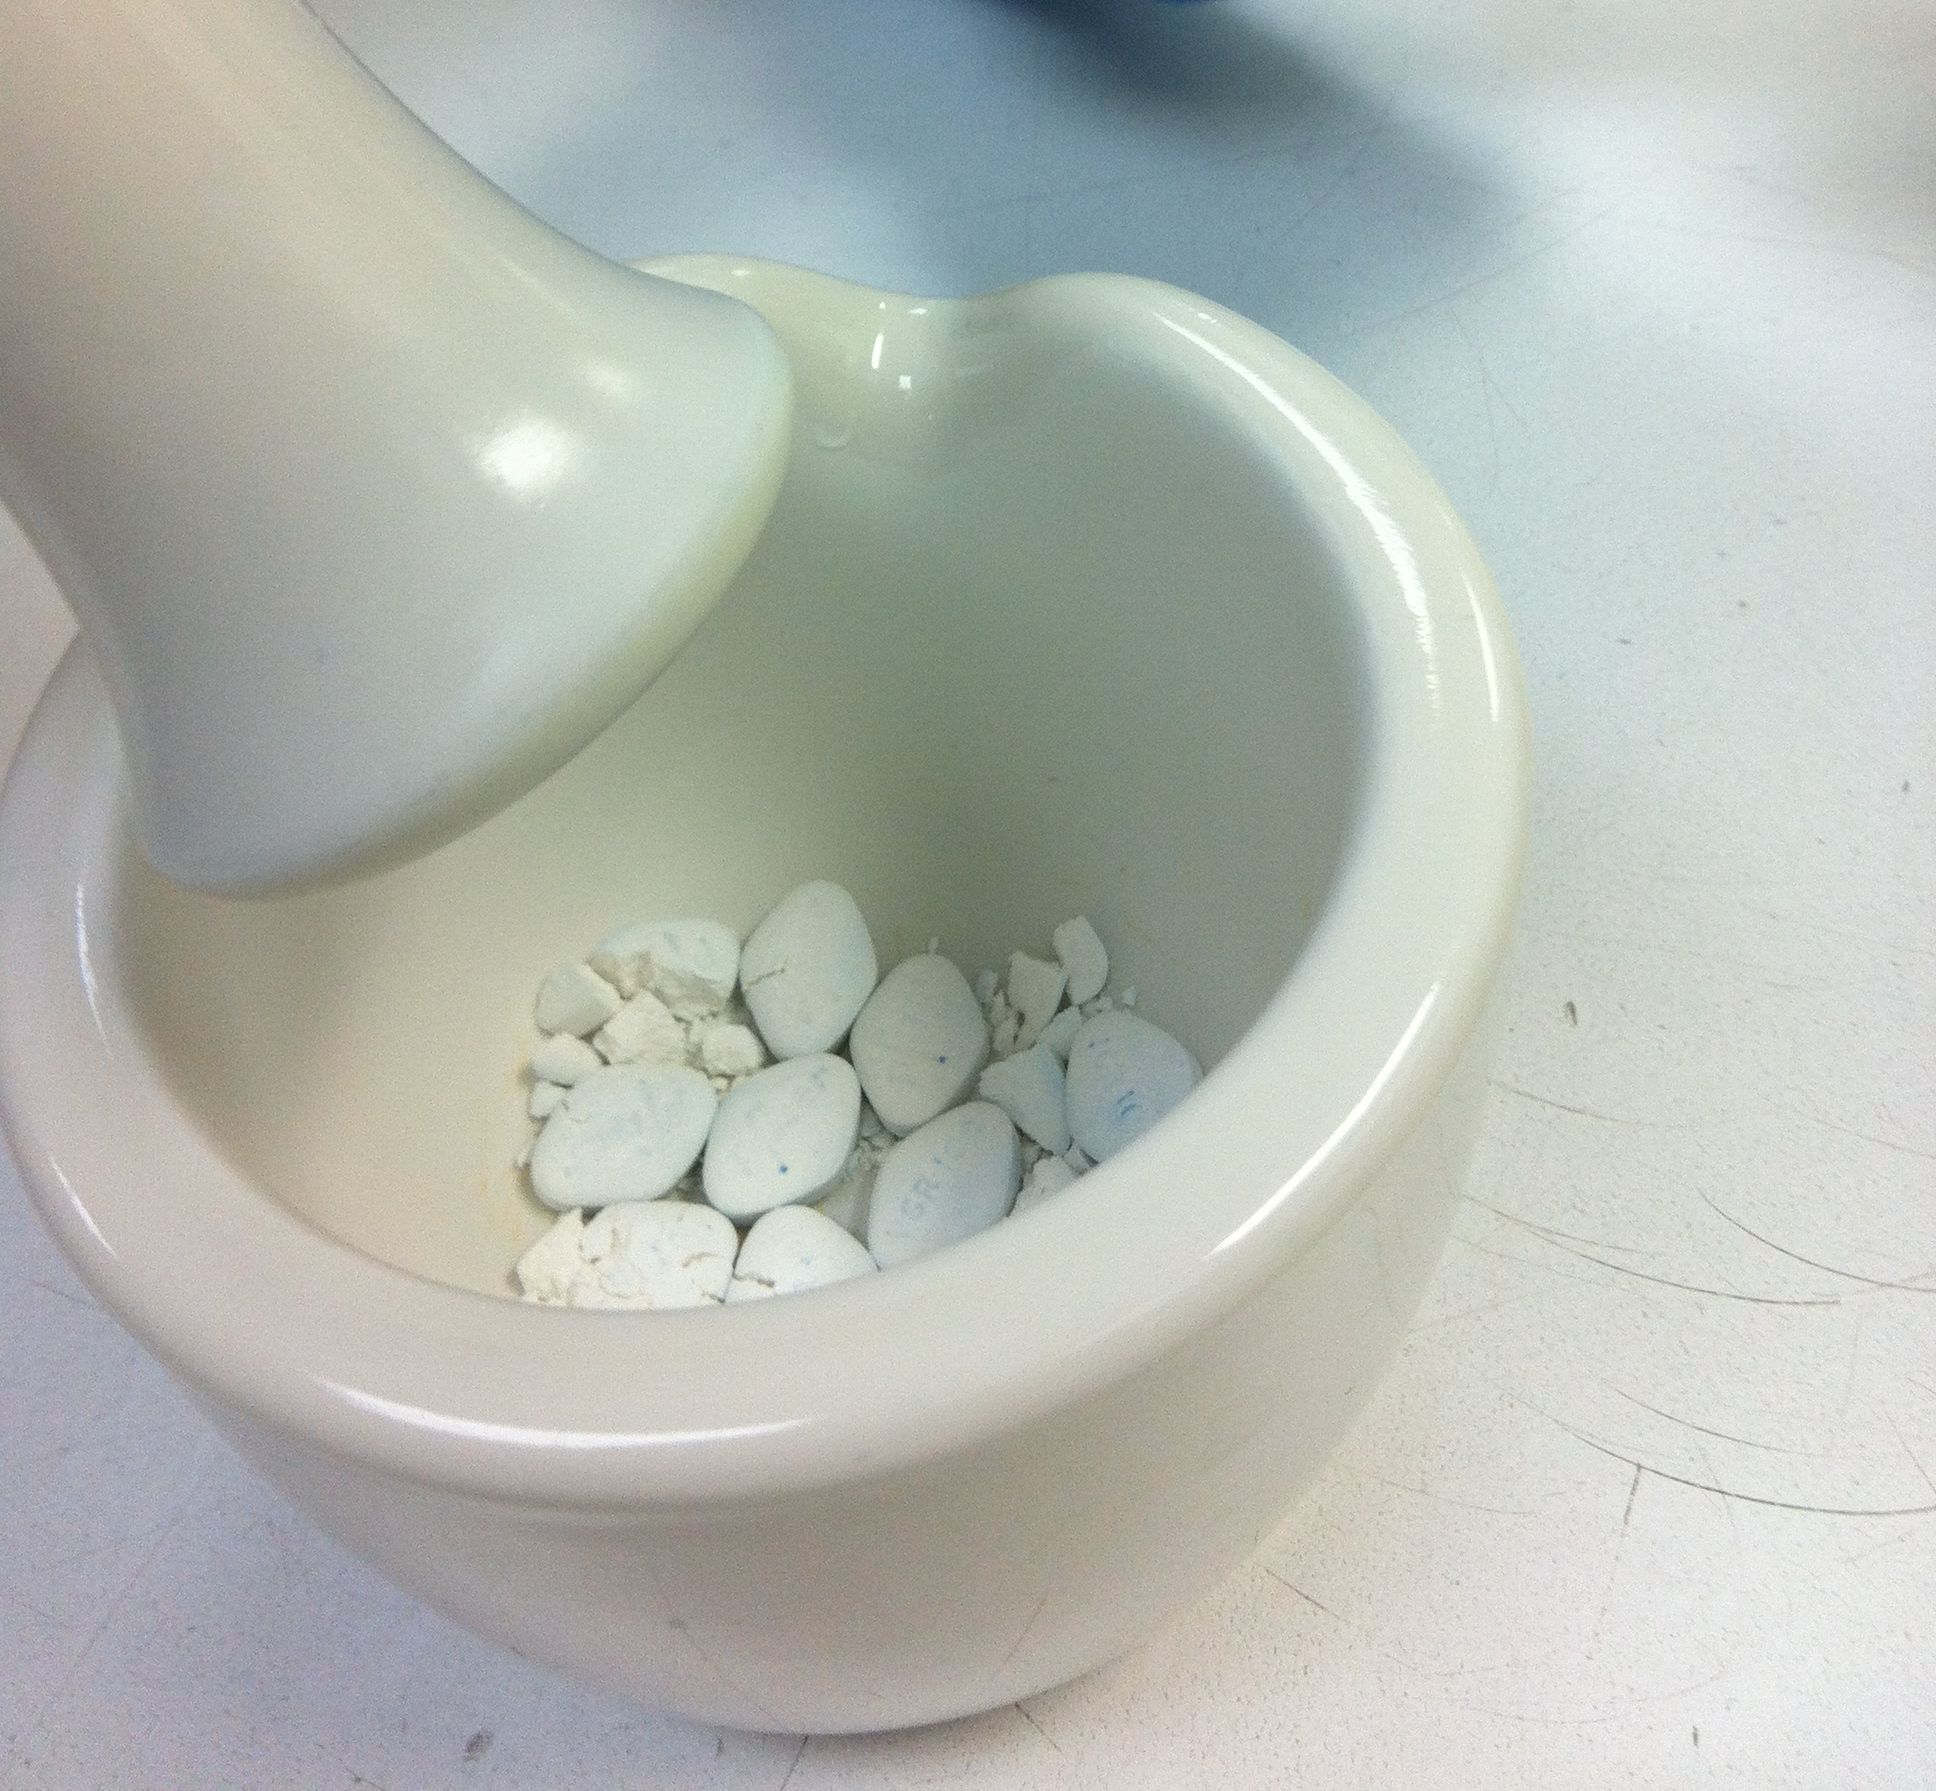 Домашний метод тестирования для идентификации поддельных таблеток анаболических стероидов